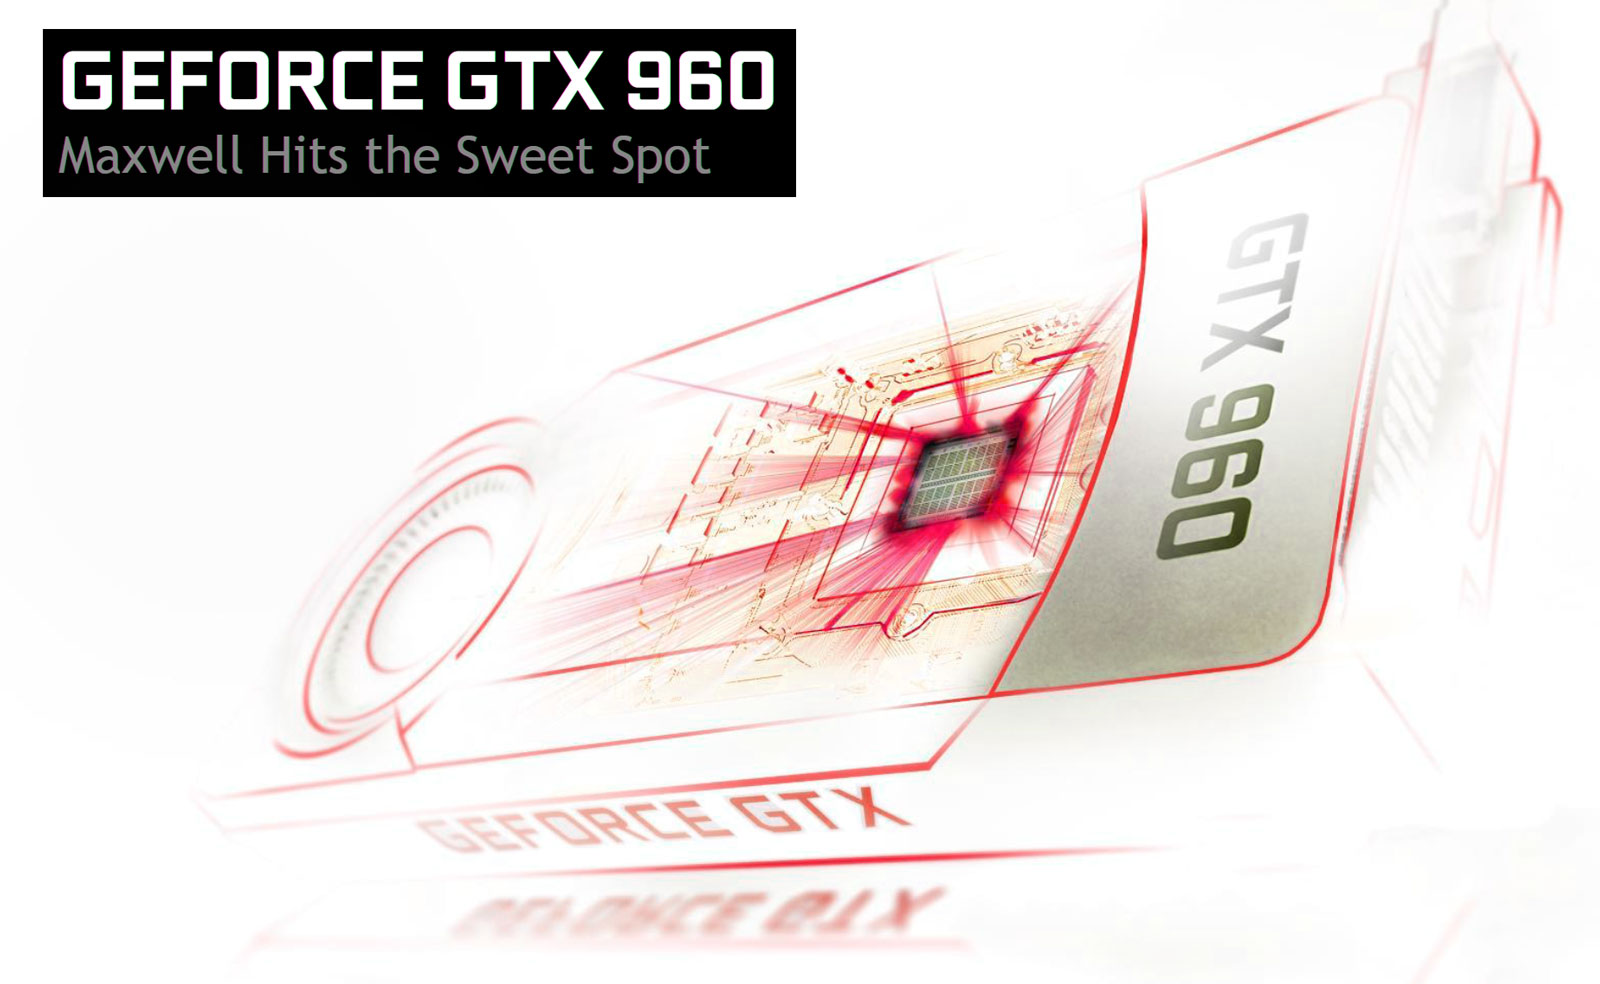 GTX 960